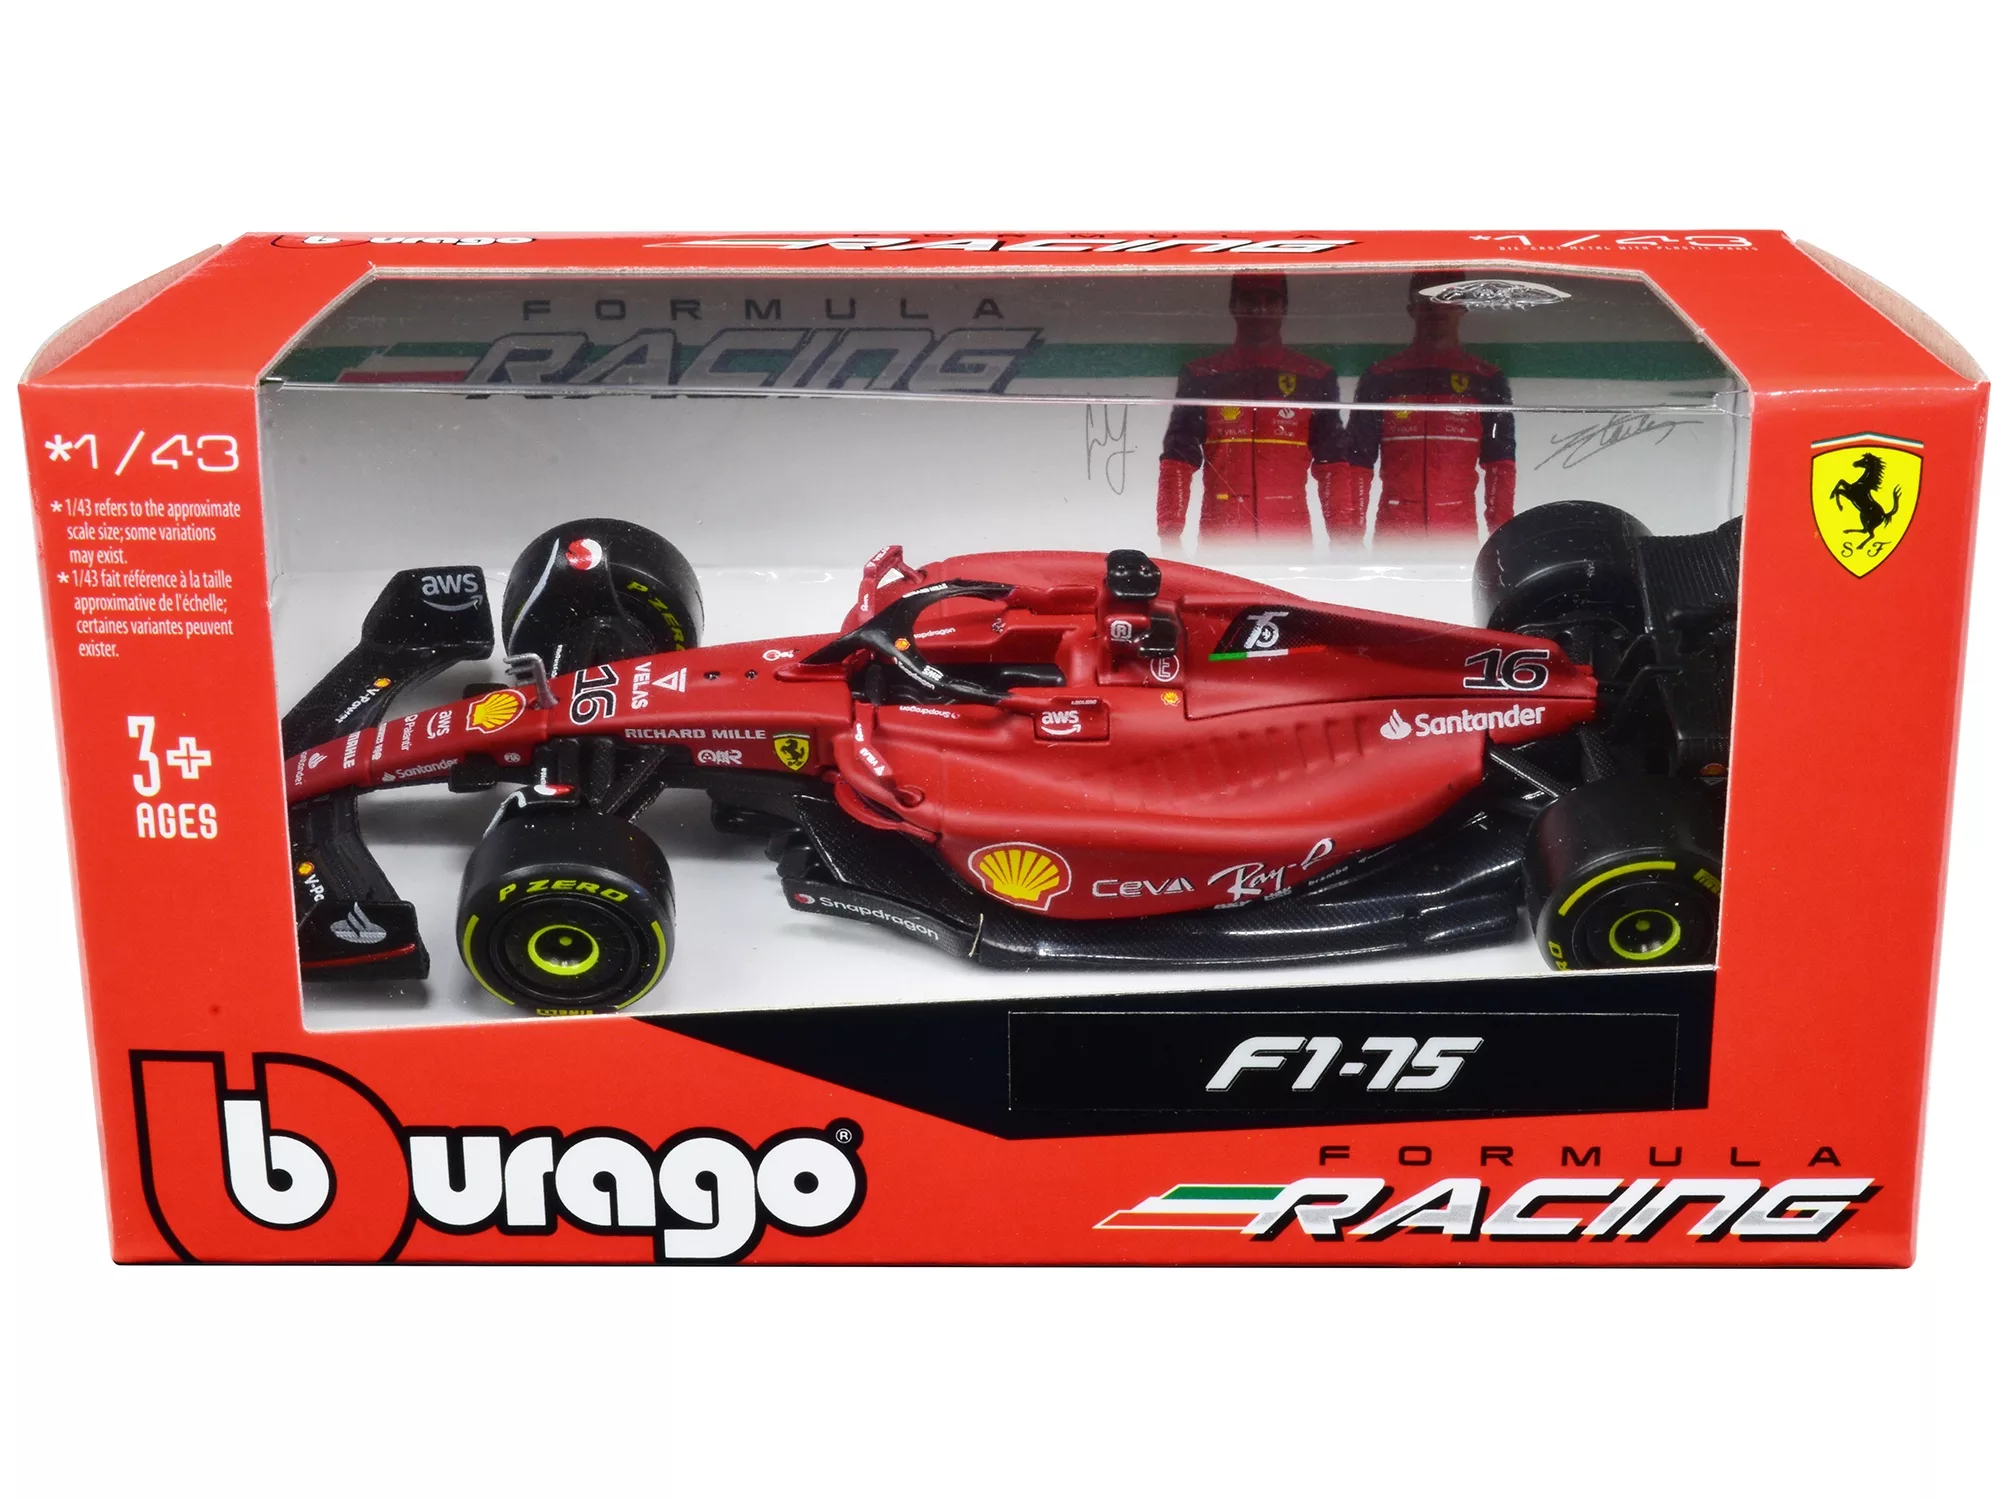 Bburago VS Spark - F1 Diecast Review 